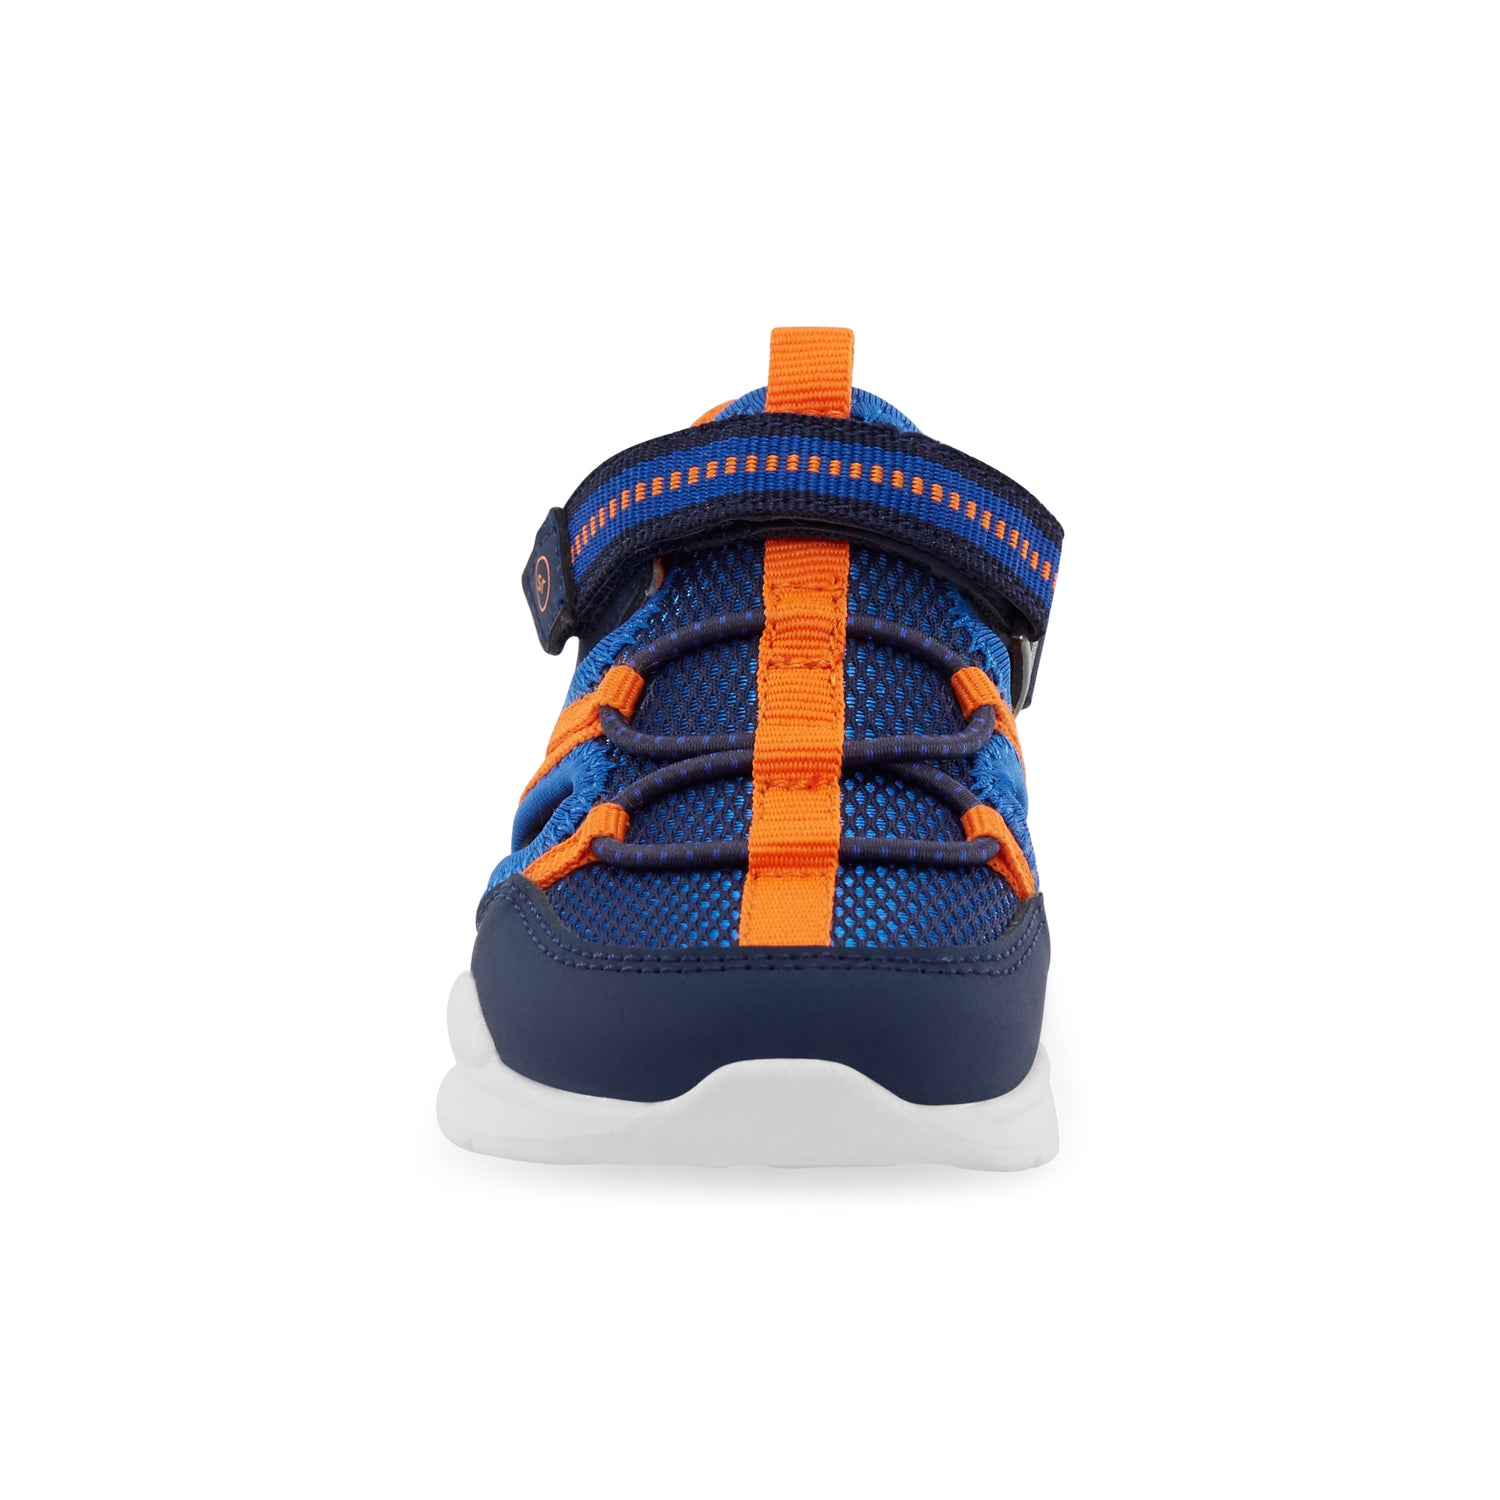 Brinley Sneaker Sandal